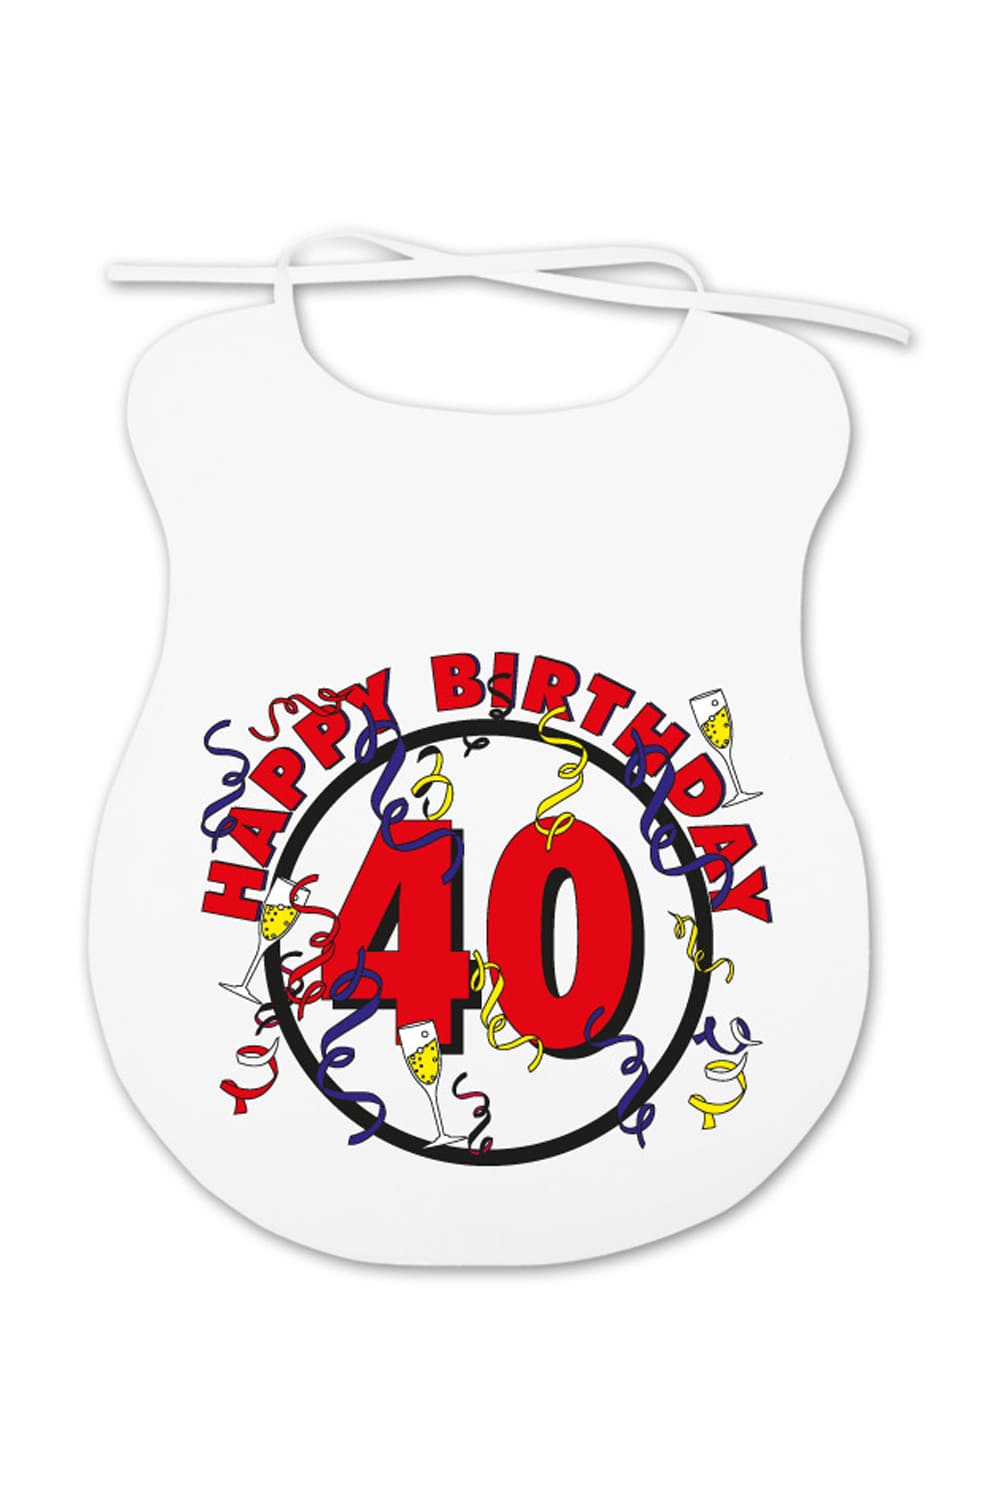 Dieser Erwachsenenlatz ist ein lustiges Geschenk fuer alle Erwachsene, die mehr oder weniger beim Essen kleckern und Humor lieben. Auf dem Spaghettilatz ist ein cooles Bild aufgedruckt sowie die Zahl 40 und die Aufschrift: Happy Birthday. Dieses witzige Geschenk oder Mitbringsel zum 40. Geburtstag!!! 